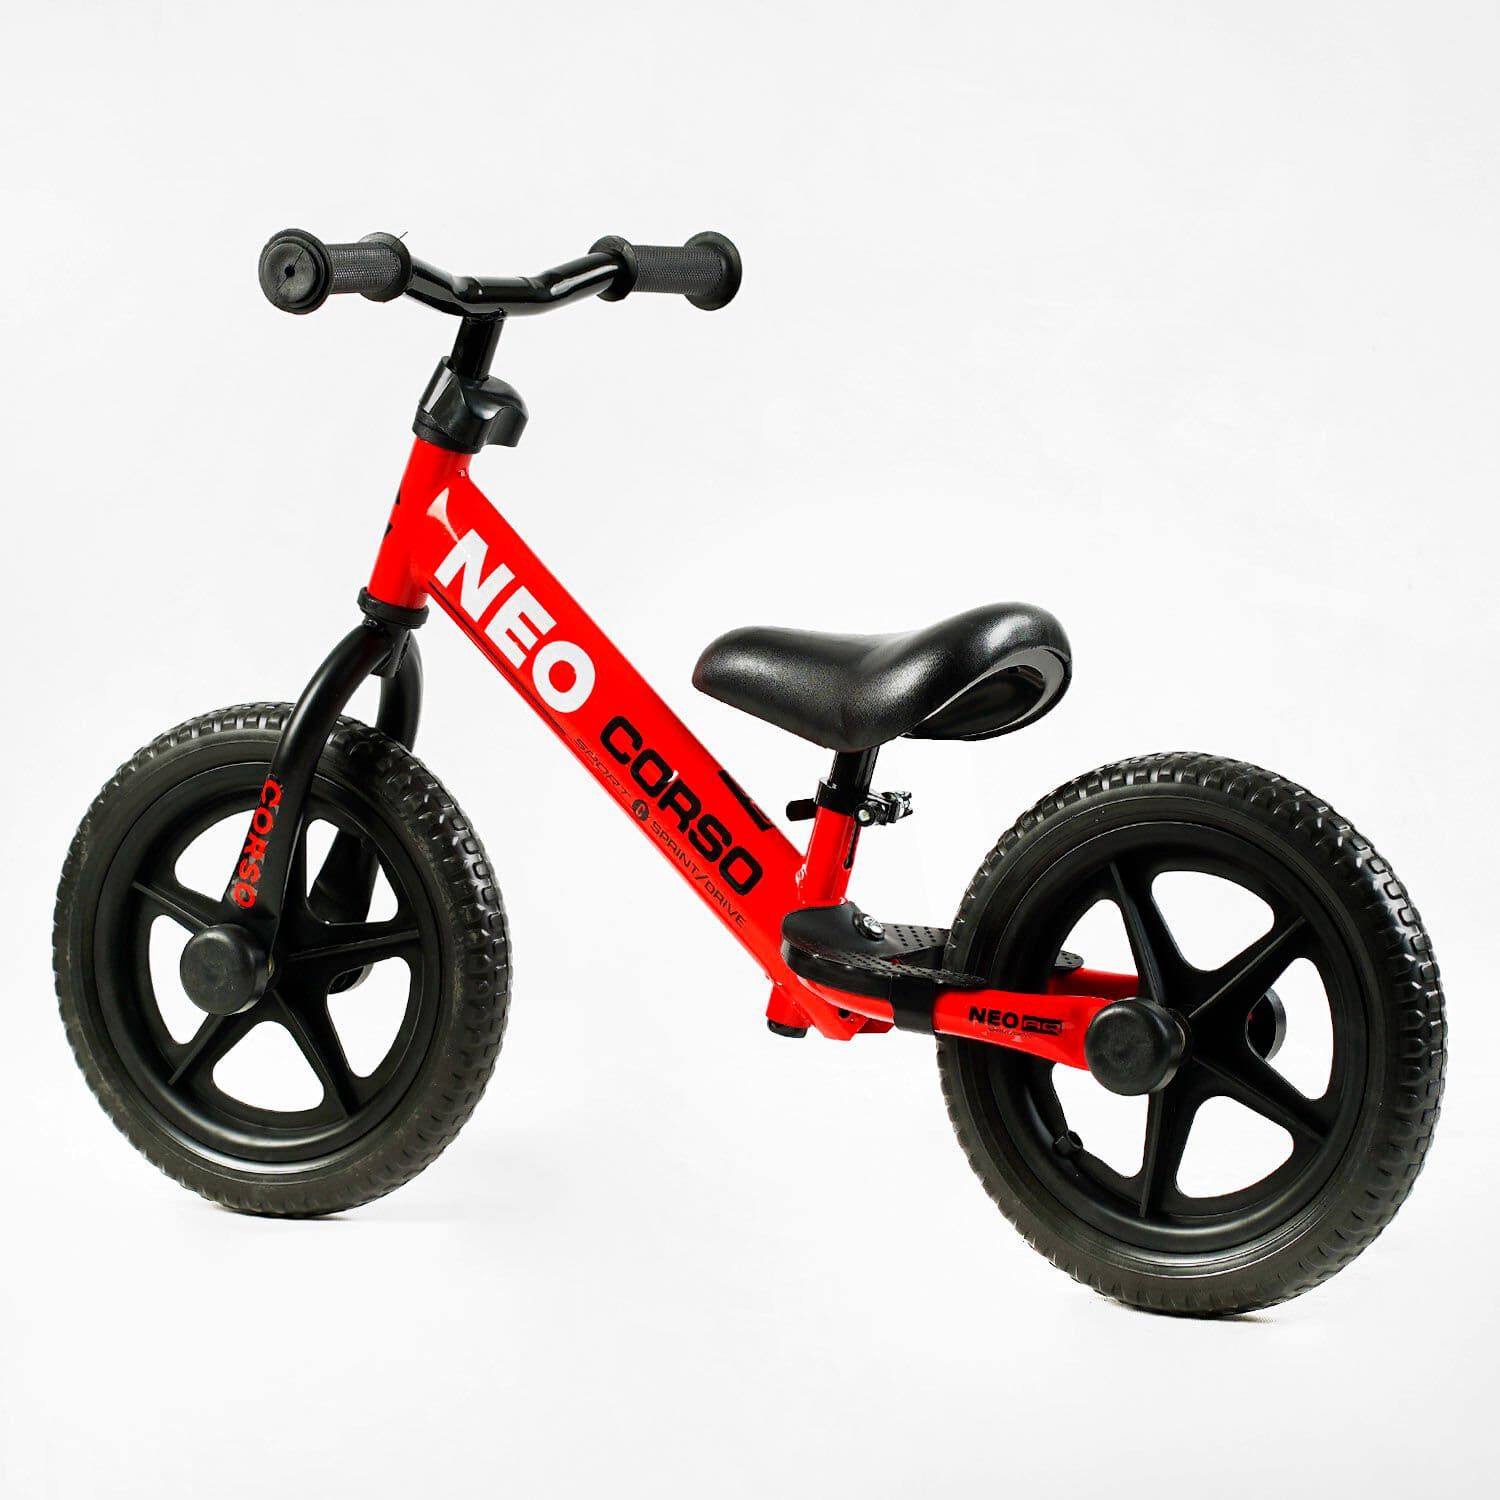 Біговел дитячий з колесами 12" EVA (ПІНА) "CORSO NEO" (EN-52360) сталева рама, підставка для ніг